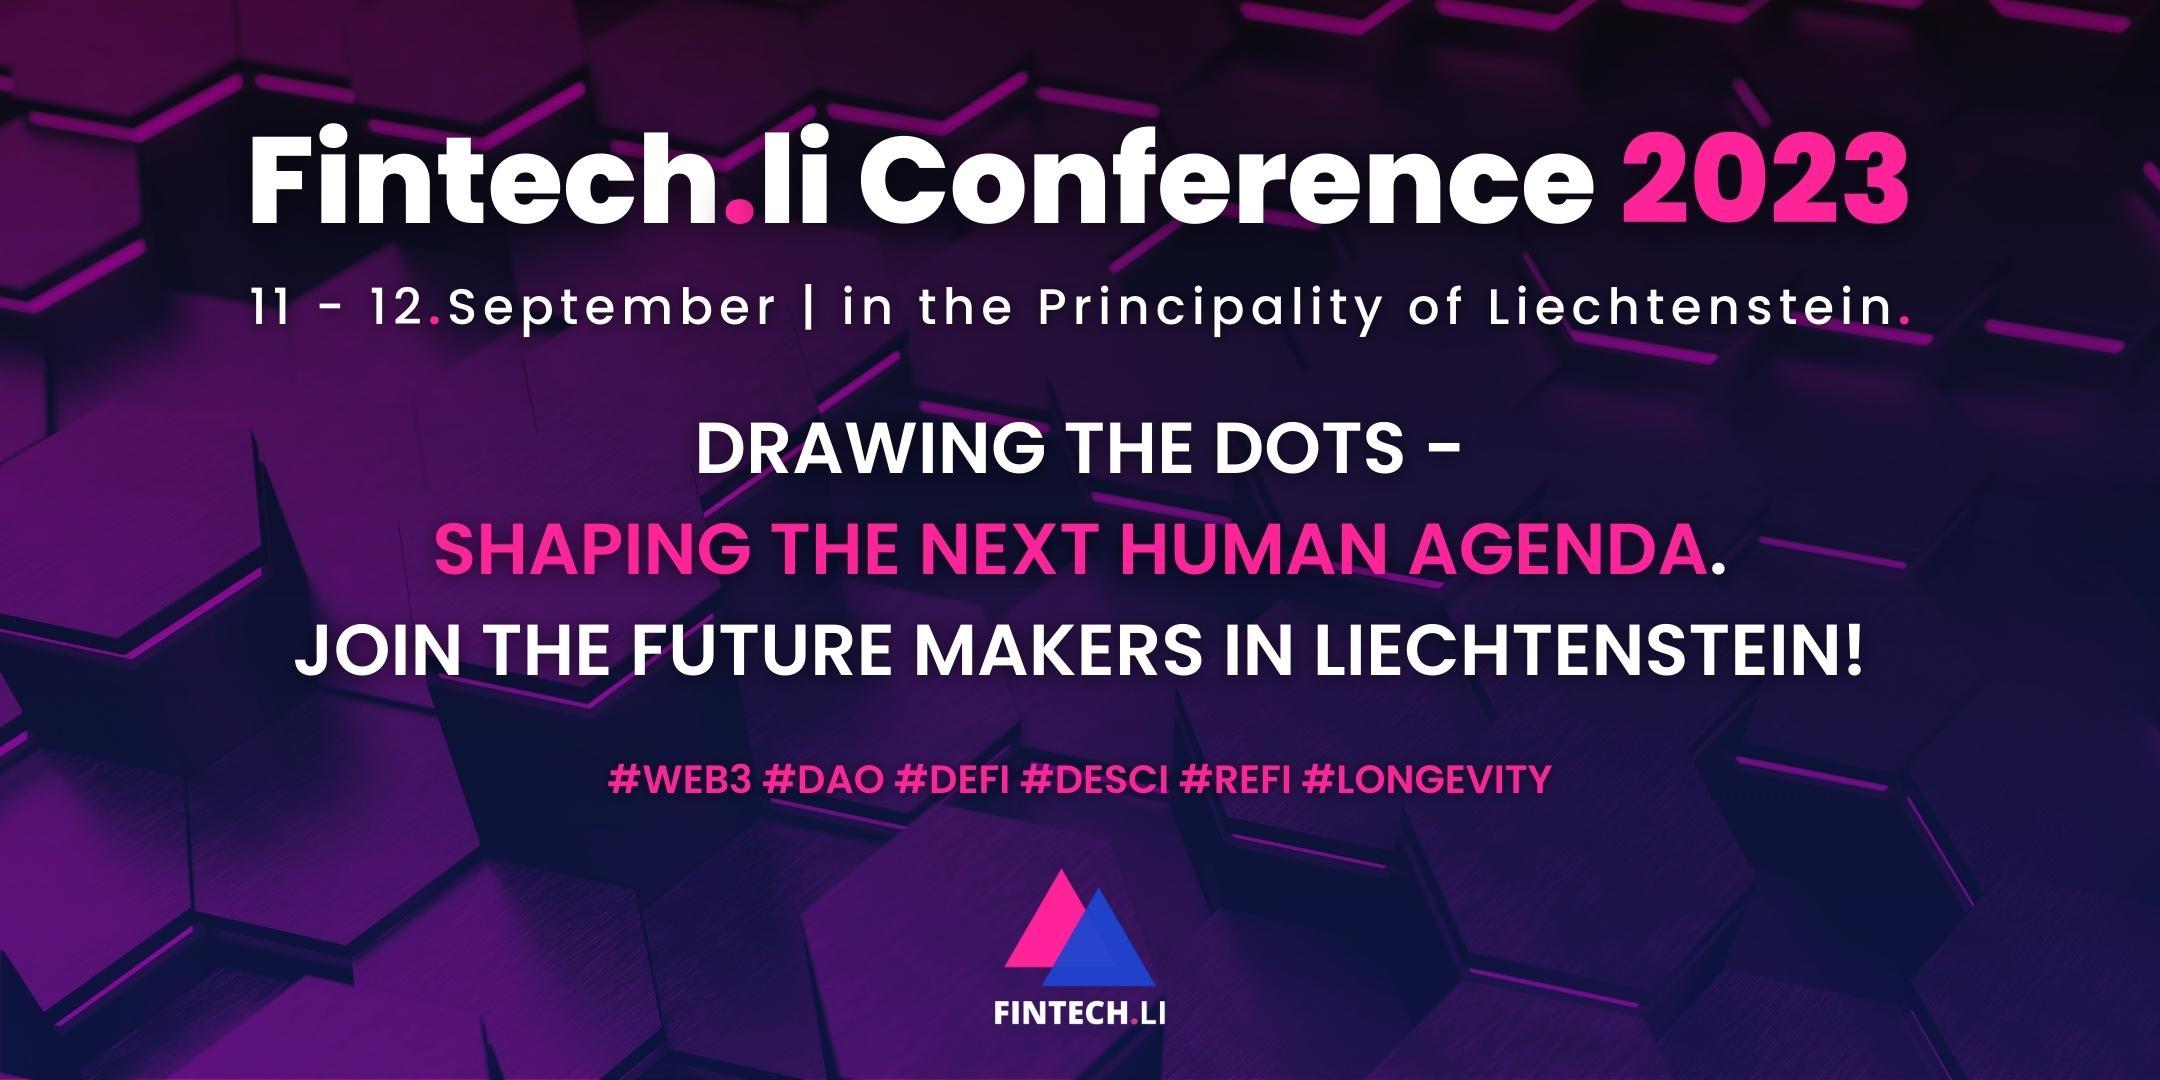 Fintech.li Conference Liechtenstein